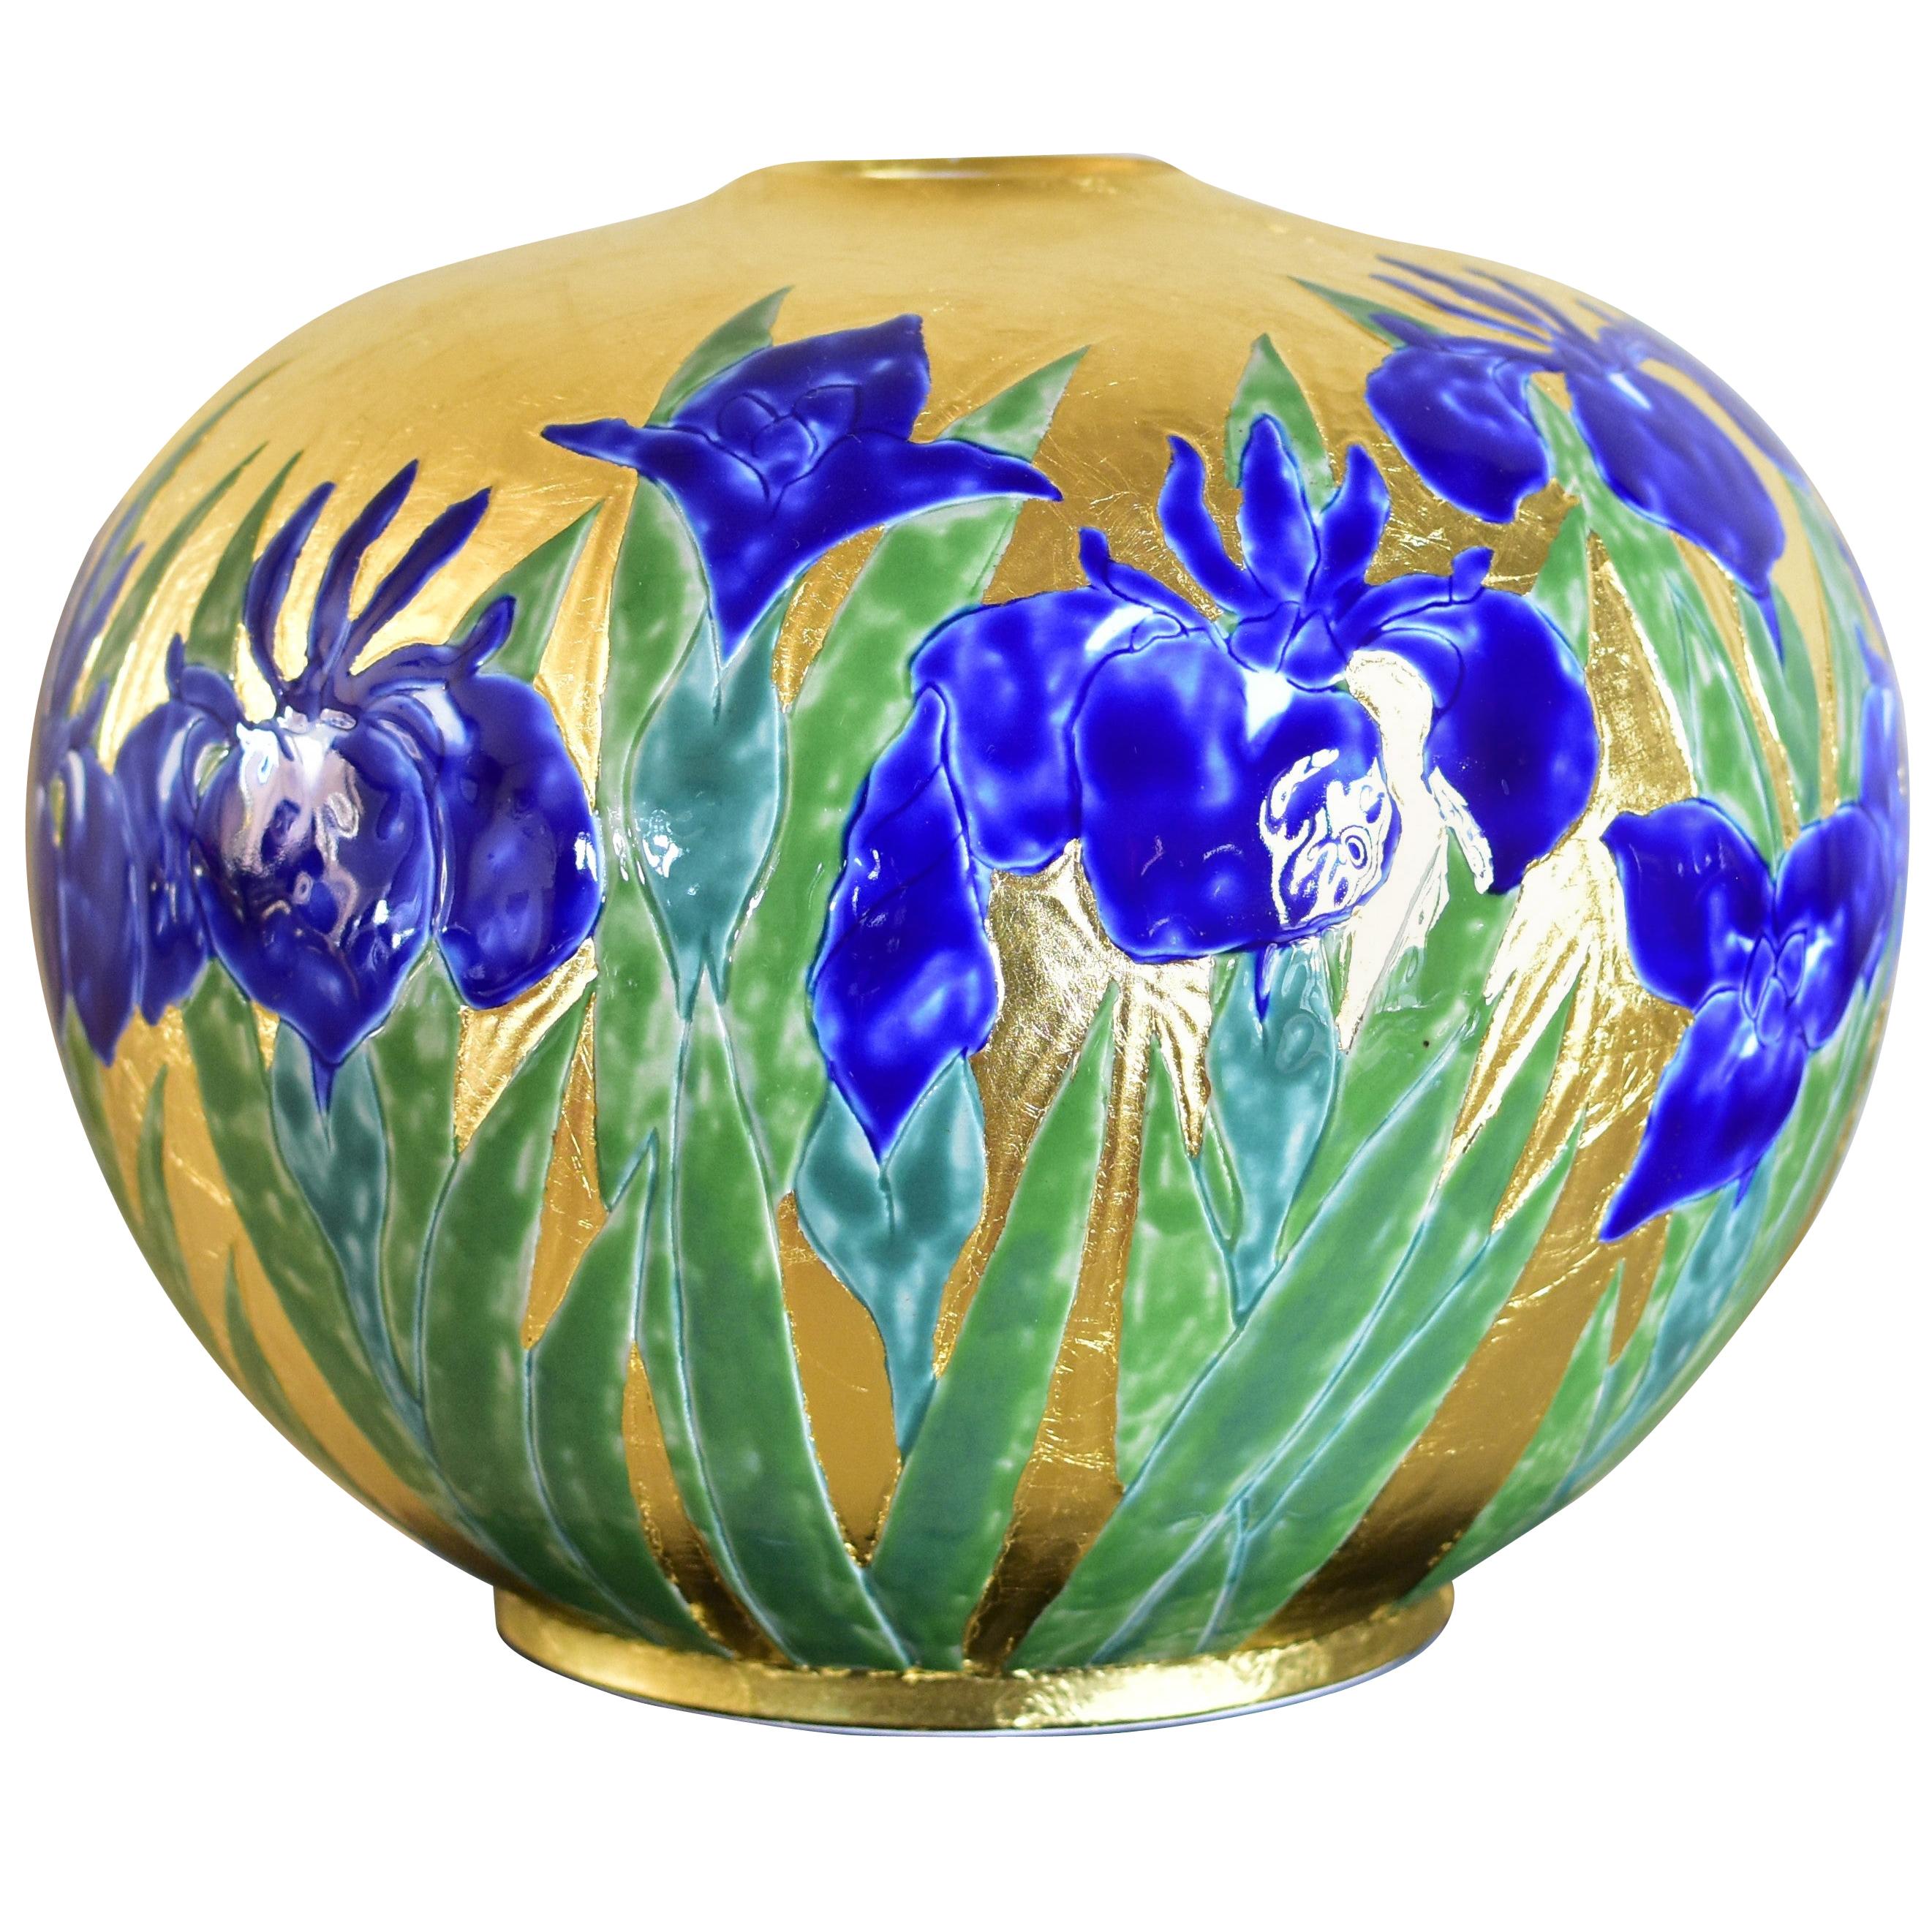 Vase japonais contemporain en porcelaine vert or et bleu par un maître artiste, 2 pièces